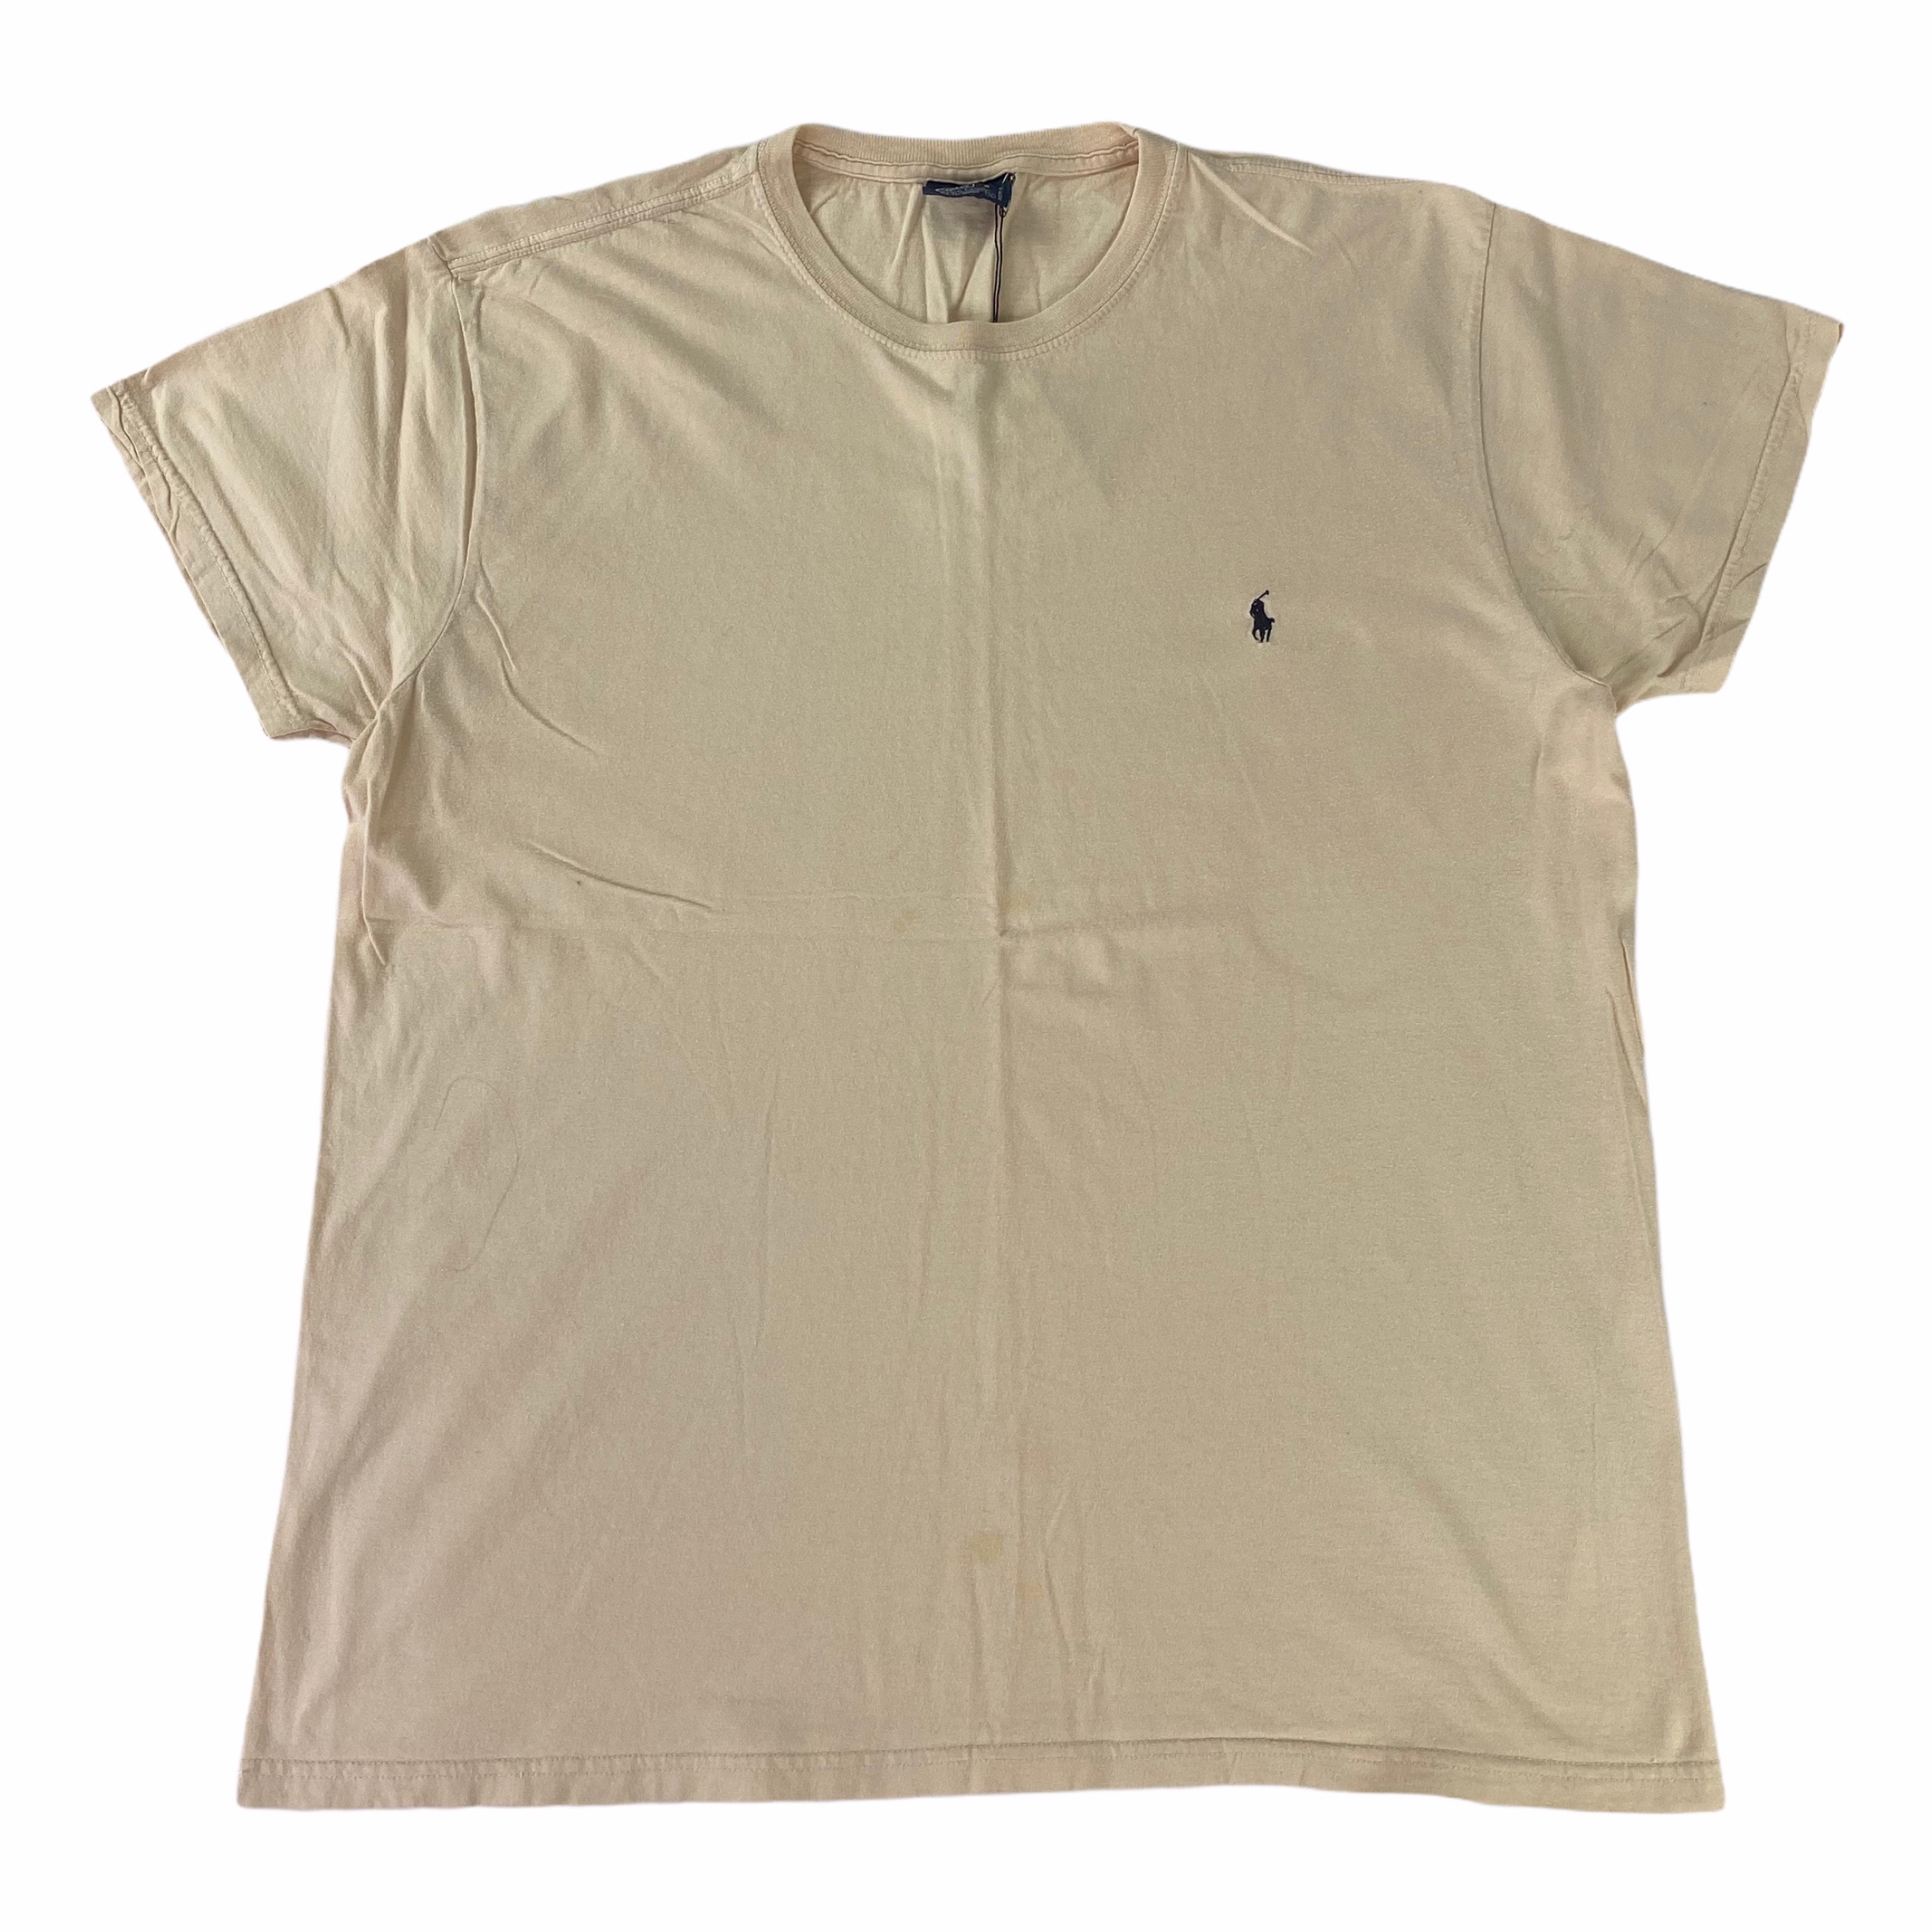 [Ralph Lauren] Creme Tshirt - Size M